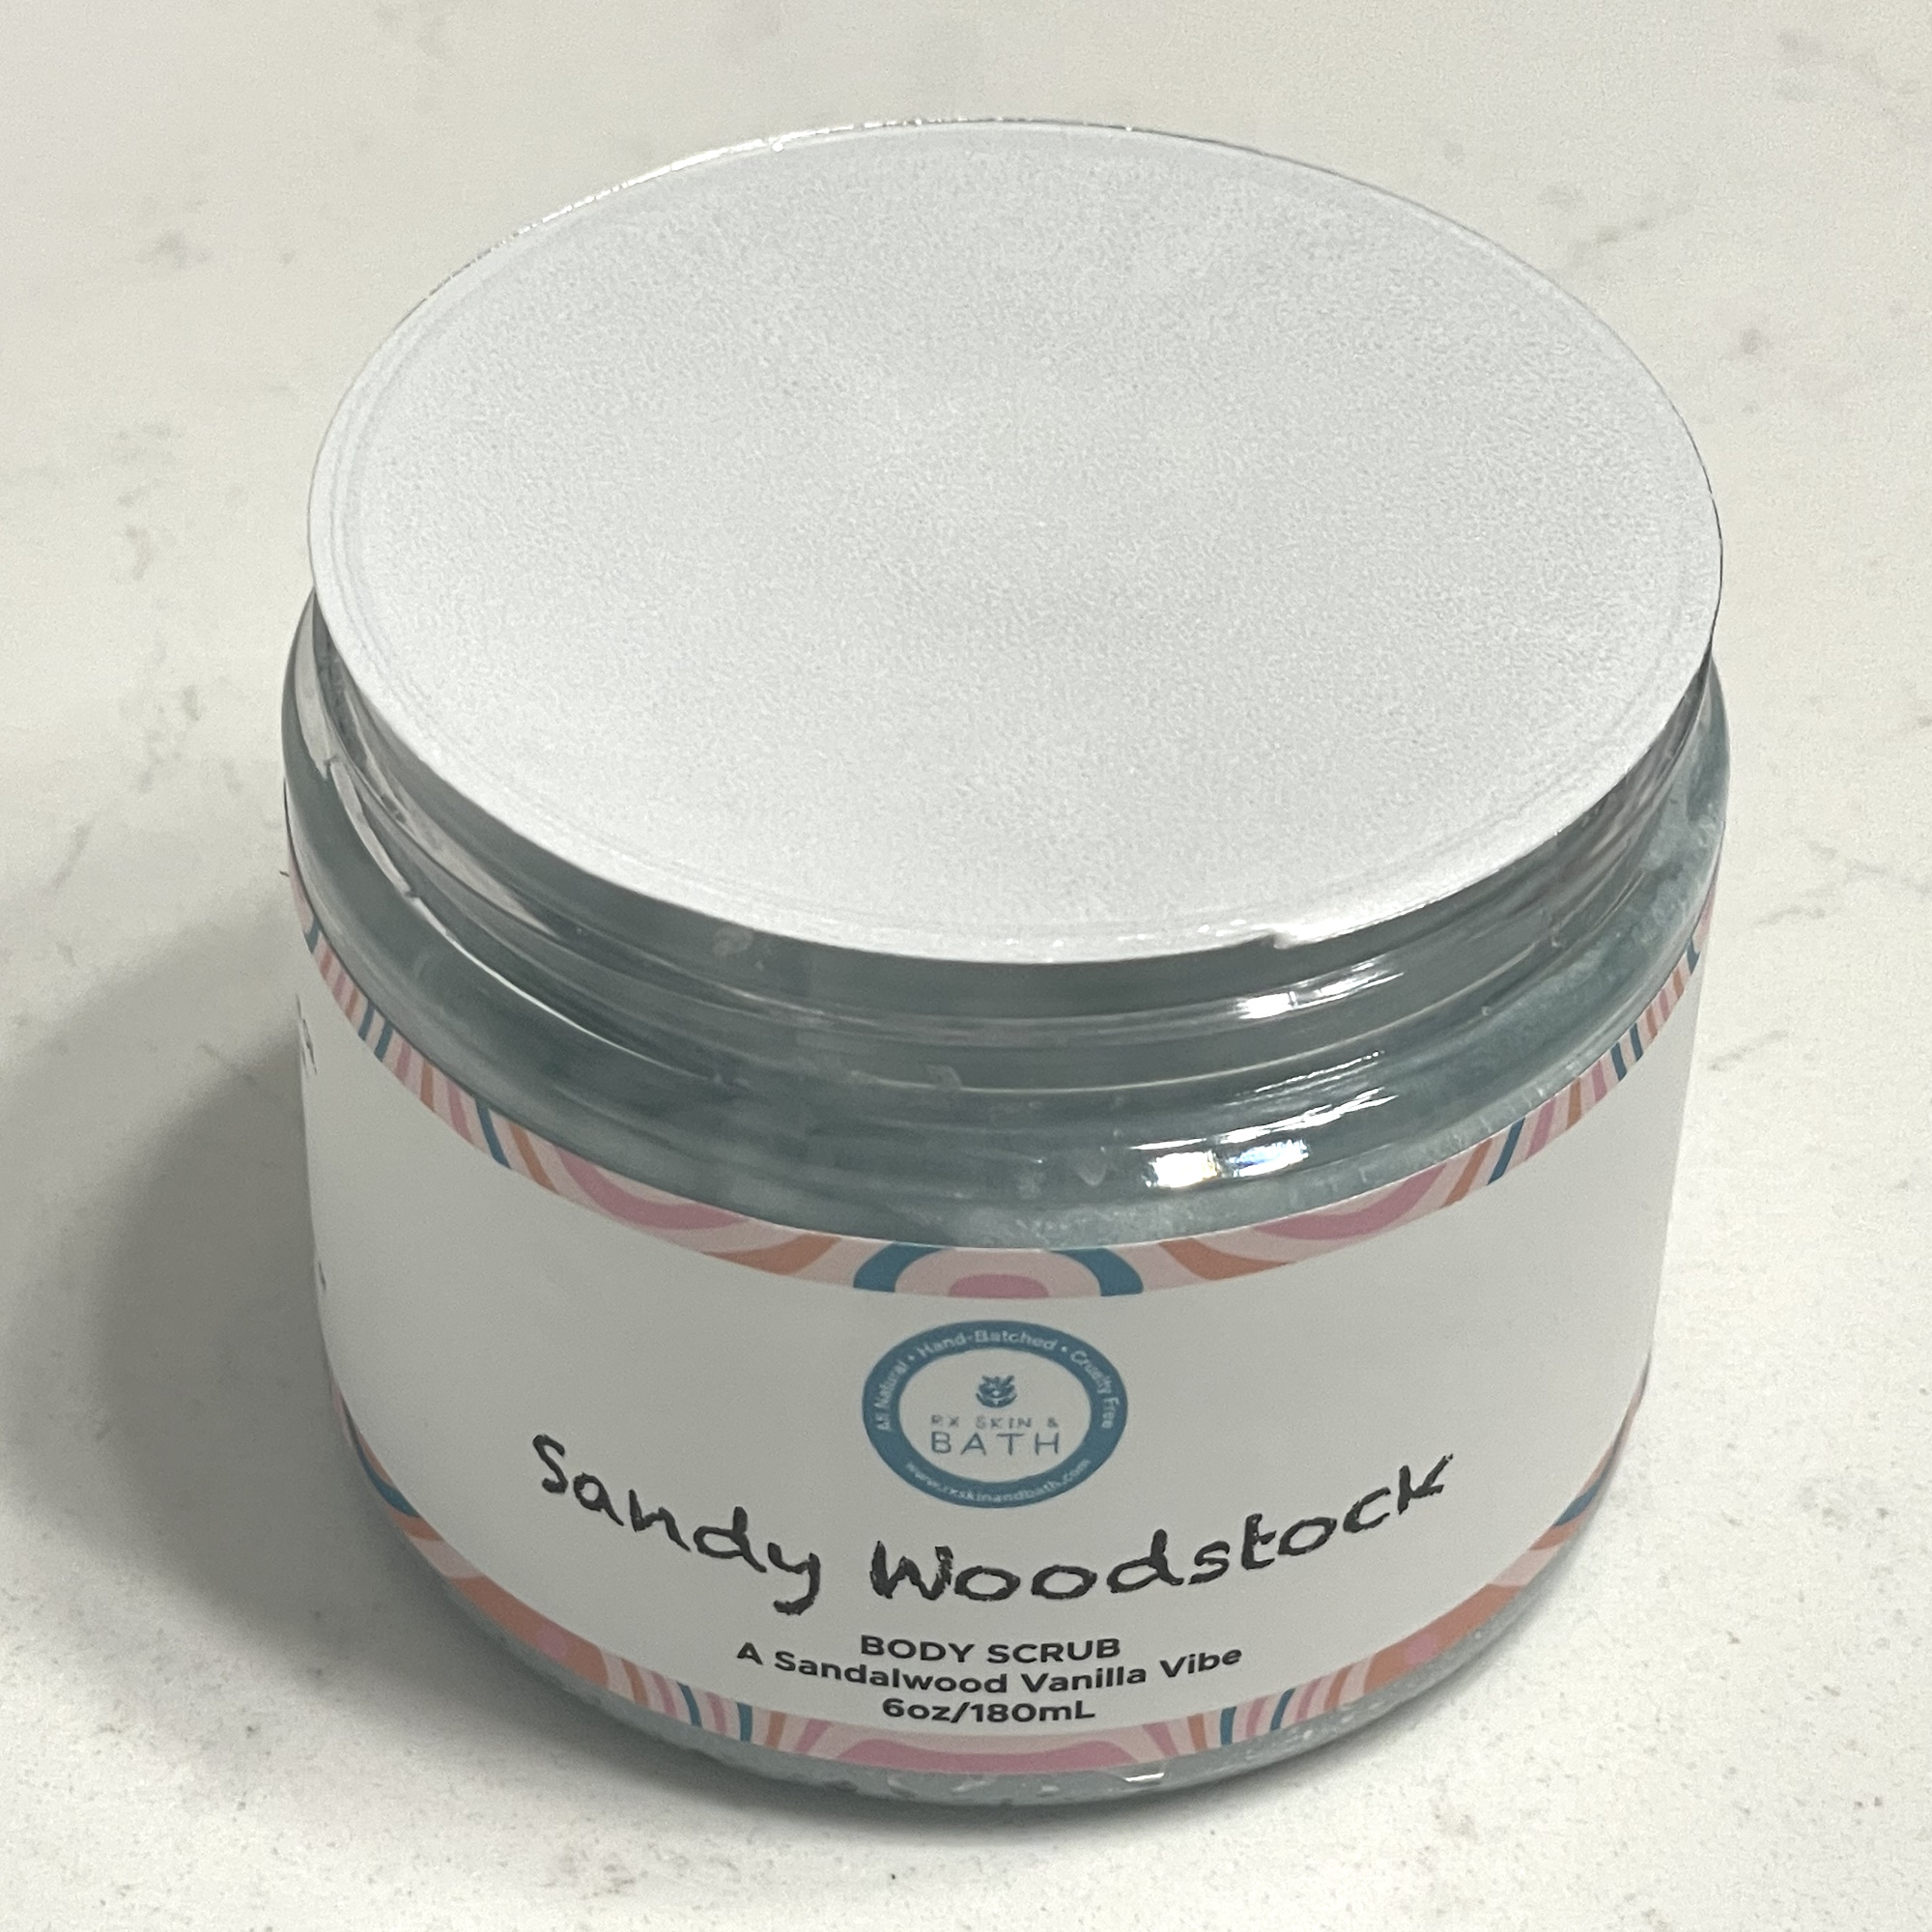 Rx Skin & Bath SANDY WOODSTOCK BODY SCRUB 6 oz 48 units per case 6.0 oz